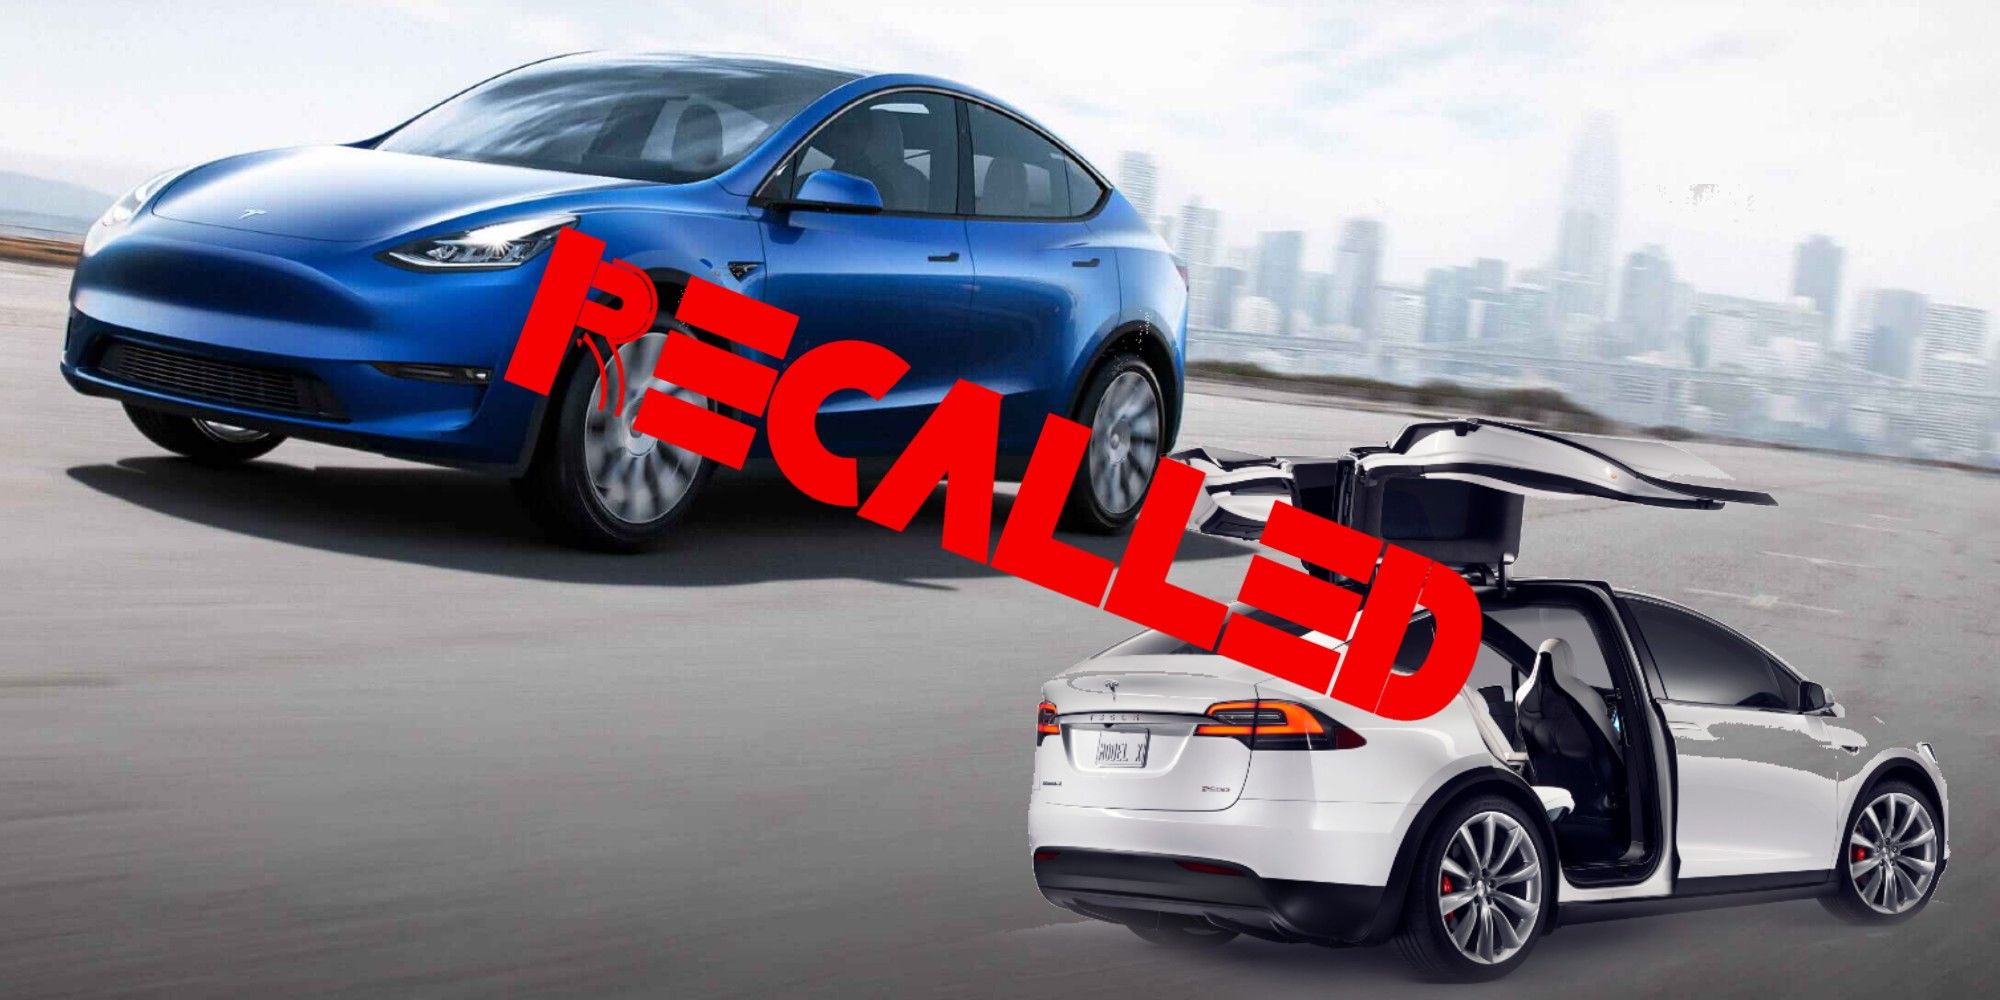 Tesla vehicle recall